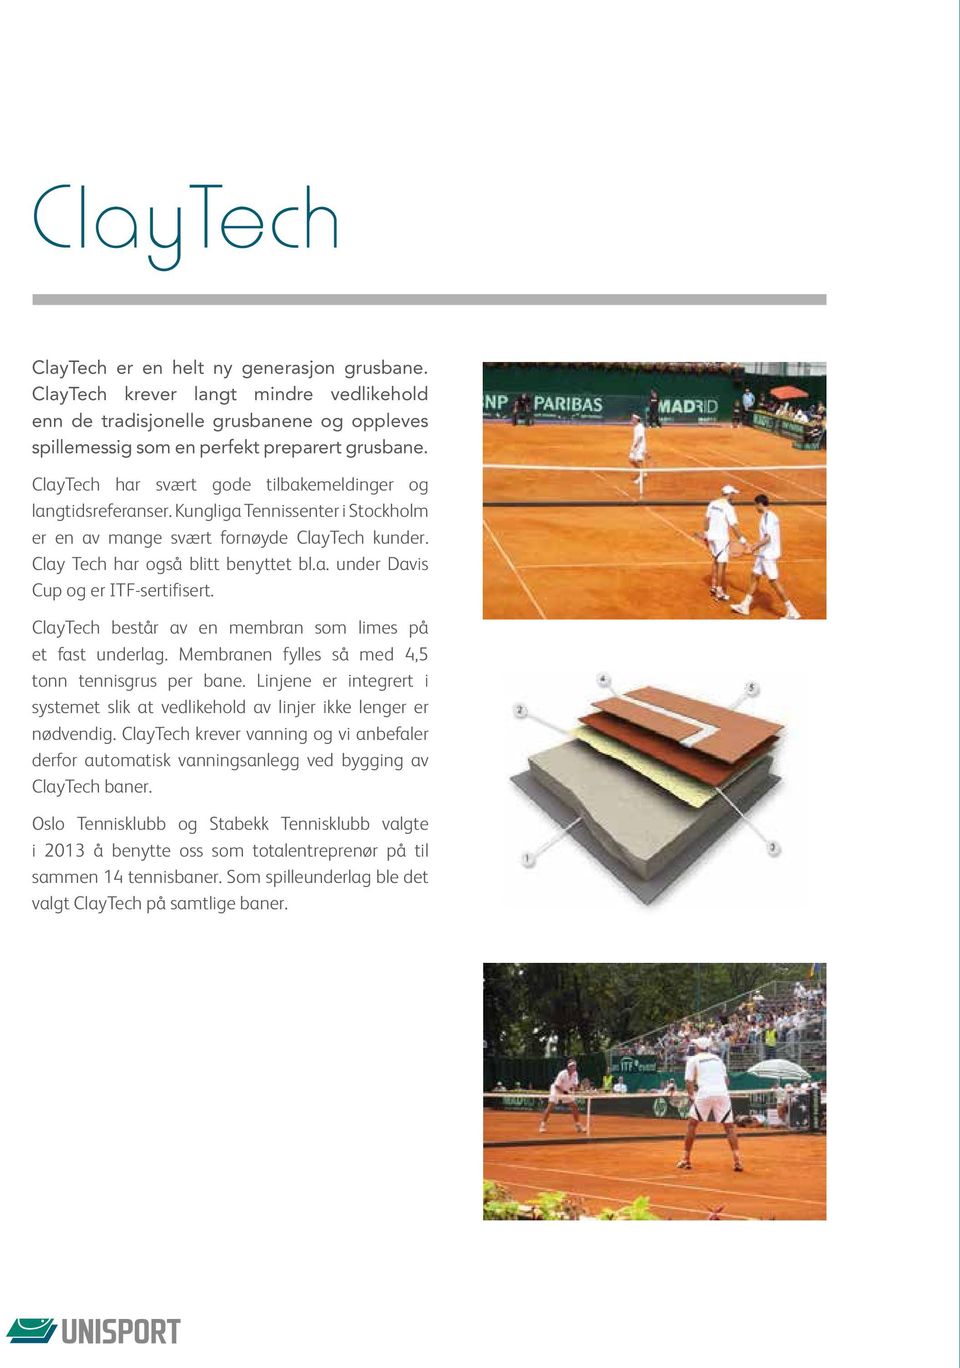 ClayTech består av en membran som limes på et fast underlag. Membranen fylles så med 4,5 tonn tennisgrus per bane.